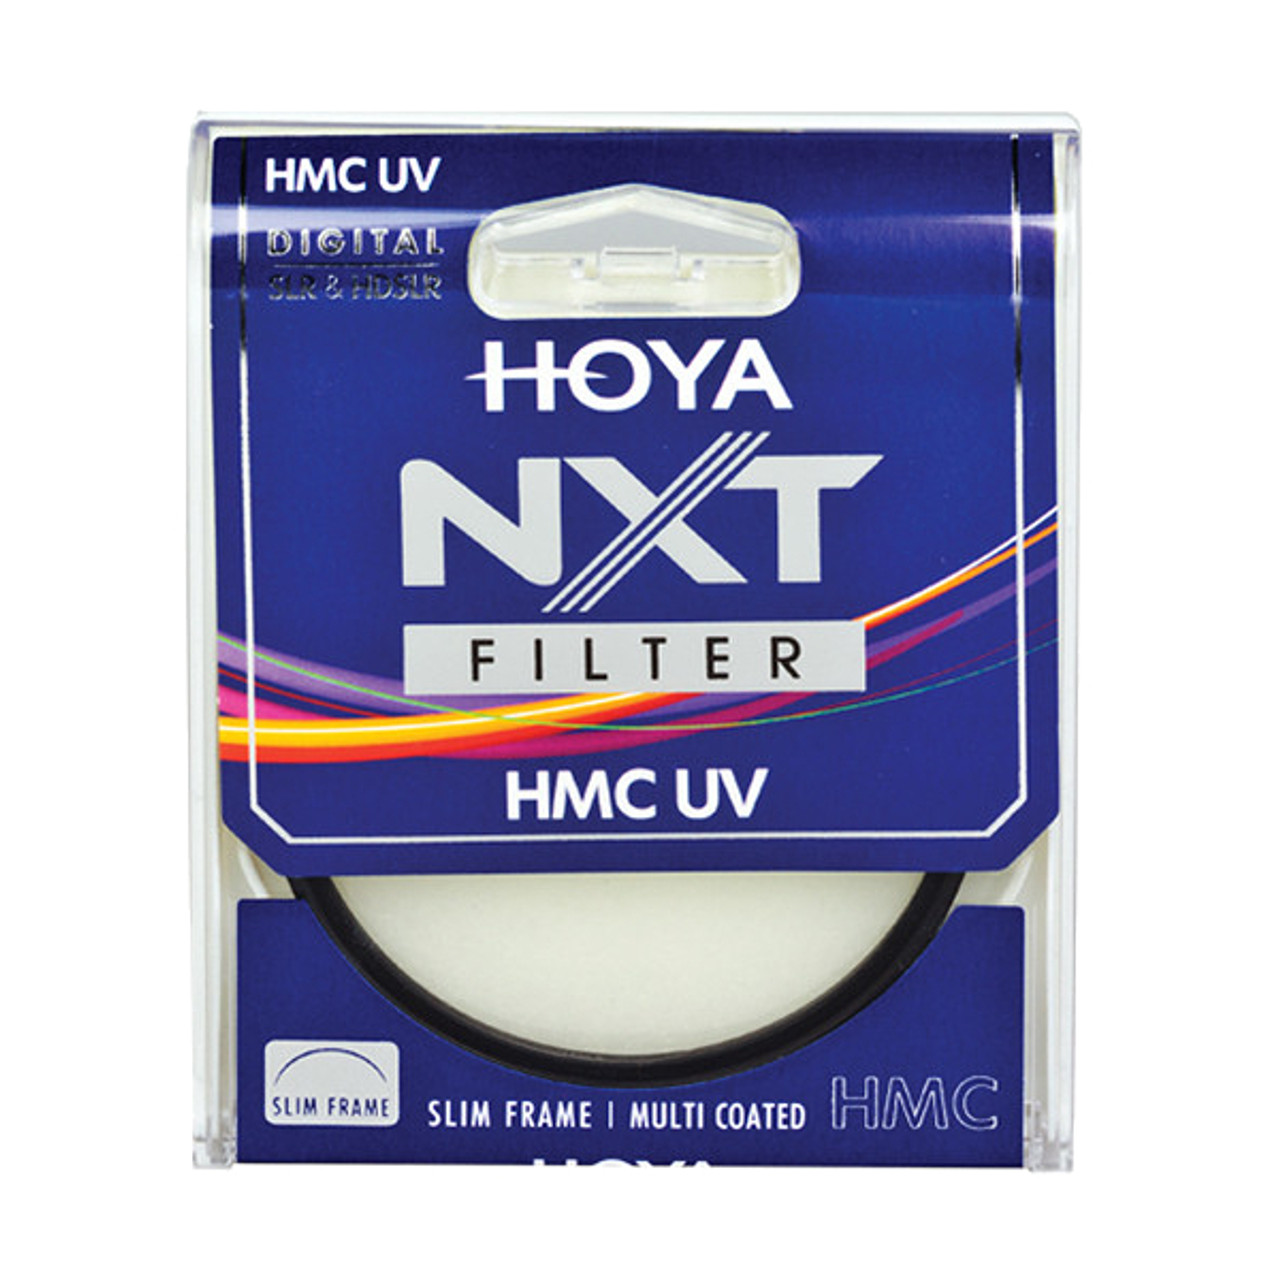 Hoya 46mm NXT UV Filter